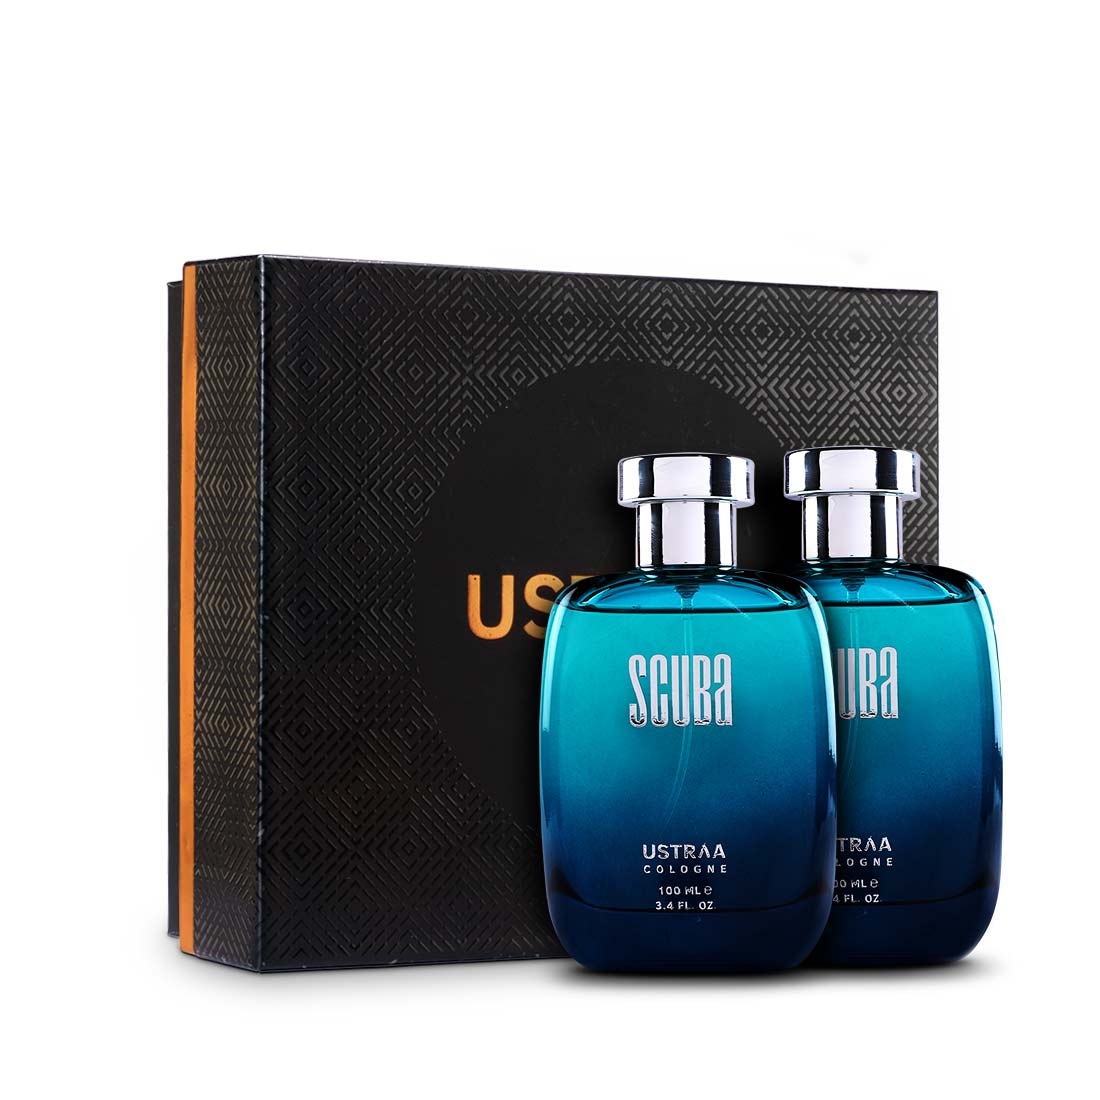 Ustraa | Fragrance Gift Box - Scuba Cologne 100ml - Set of 2